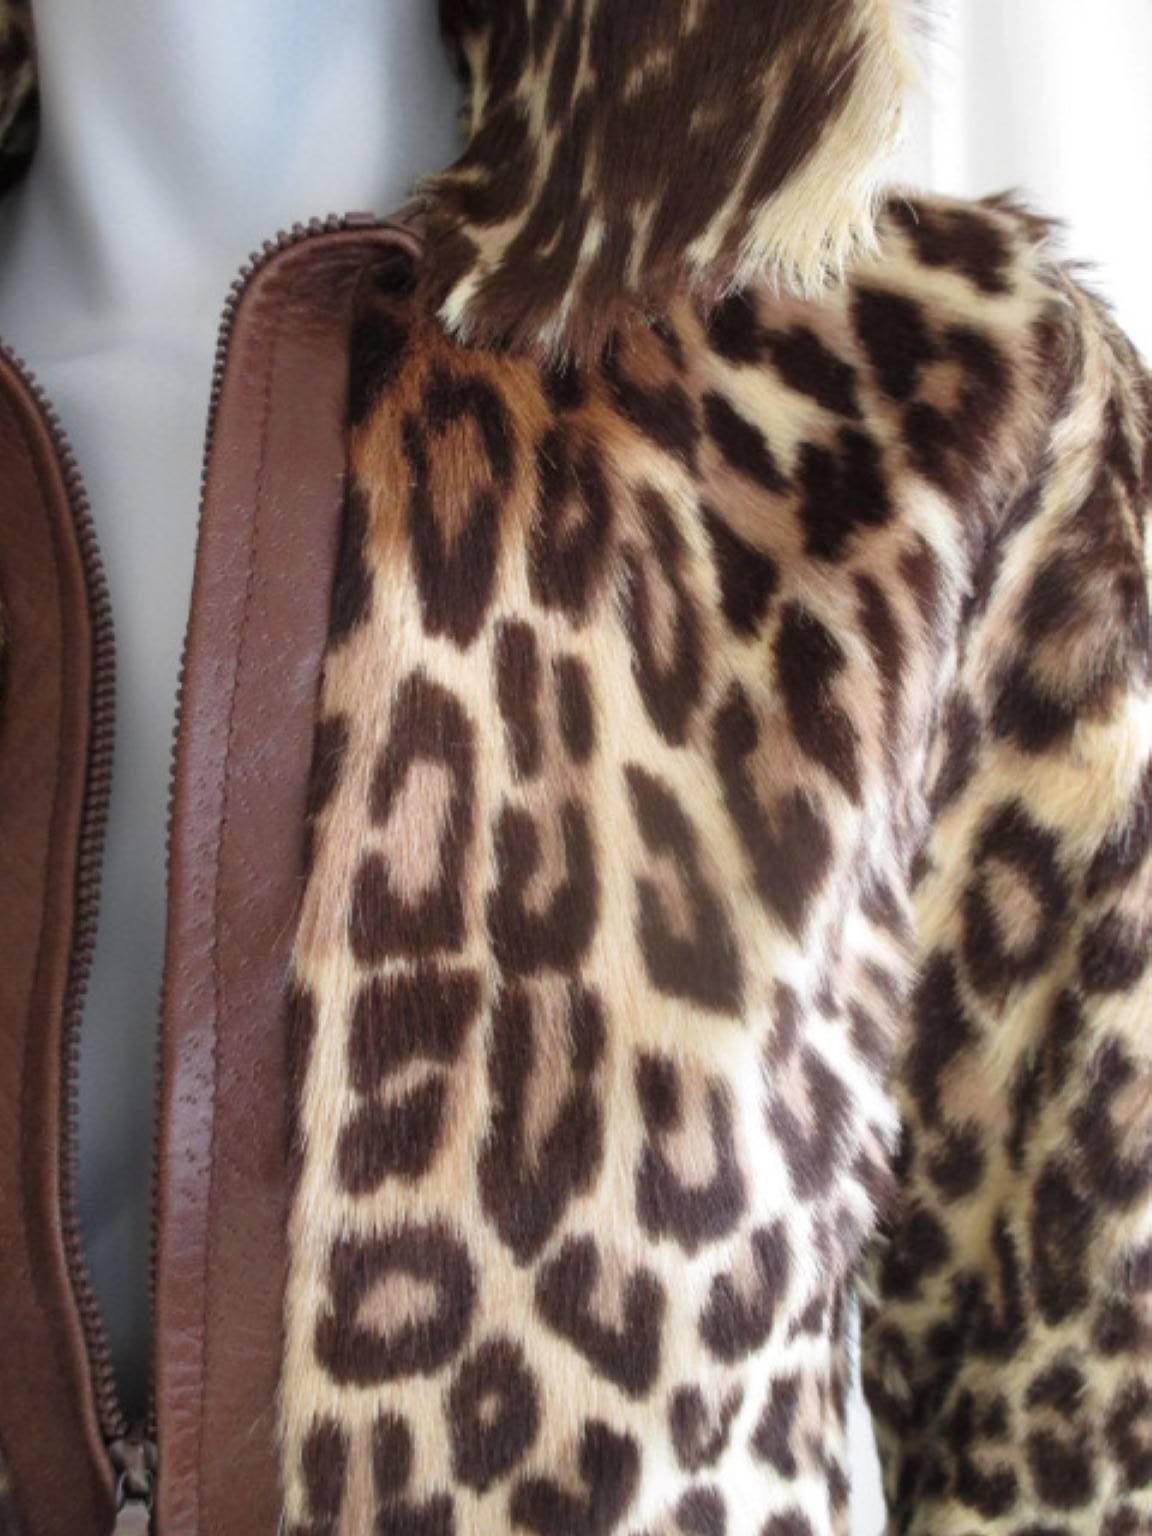 Diese Jacke im Leopardenstil ist vorne mit Leder besetzt, wird mit einem Reißverschluss geschlossen und hat 2 Taschen.
Es ist in einem guten Zustand mit Abnutzungserscheinungen am Kragen.
Die Qualität des Fells ist dick und nicht geschmeidig.
Größe